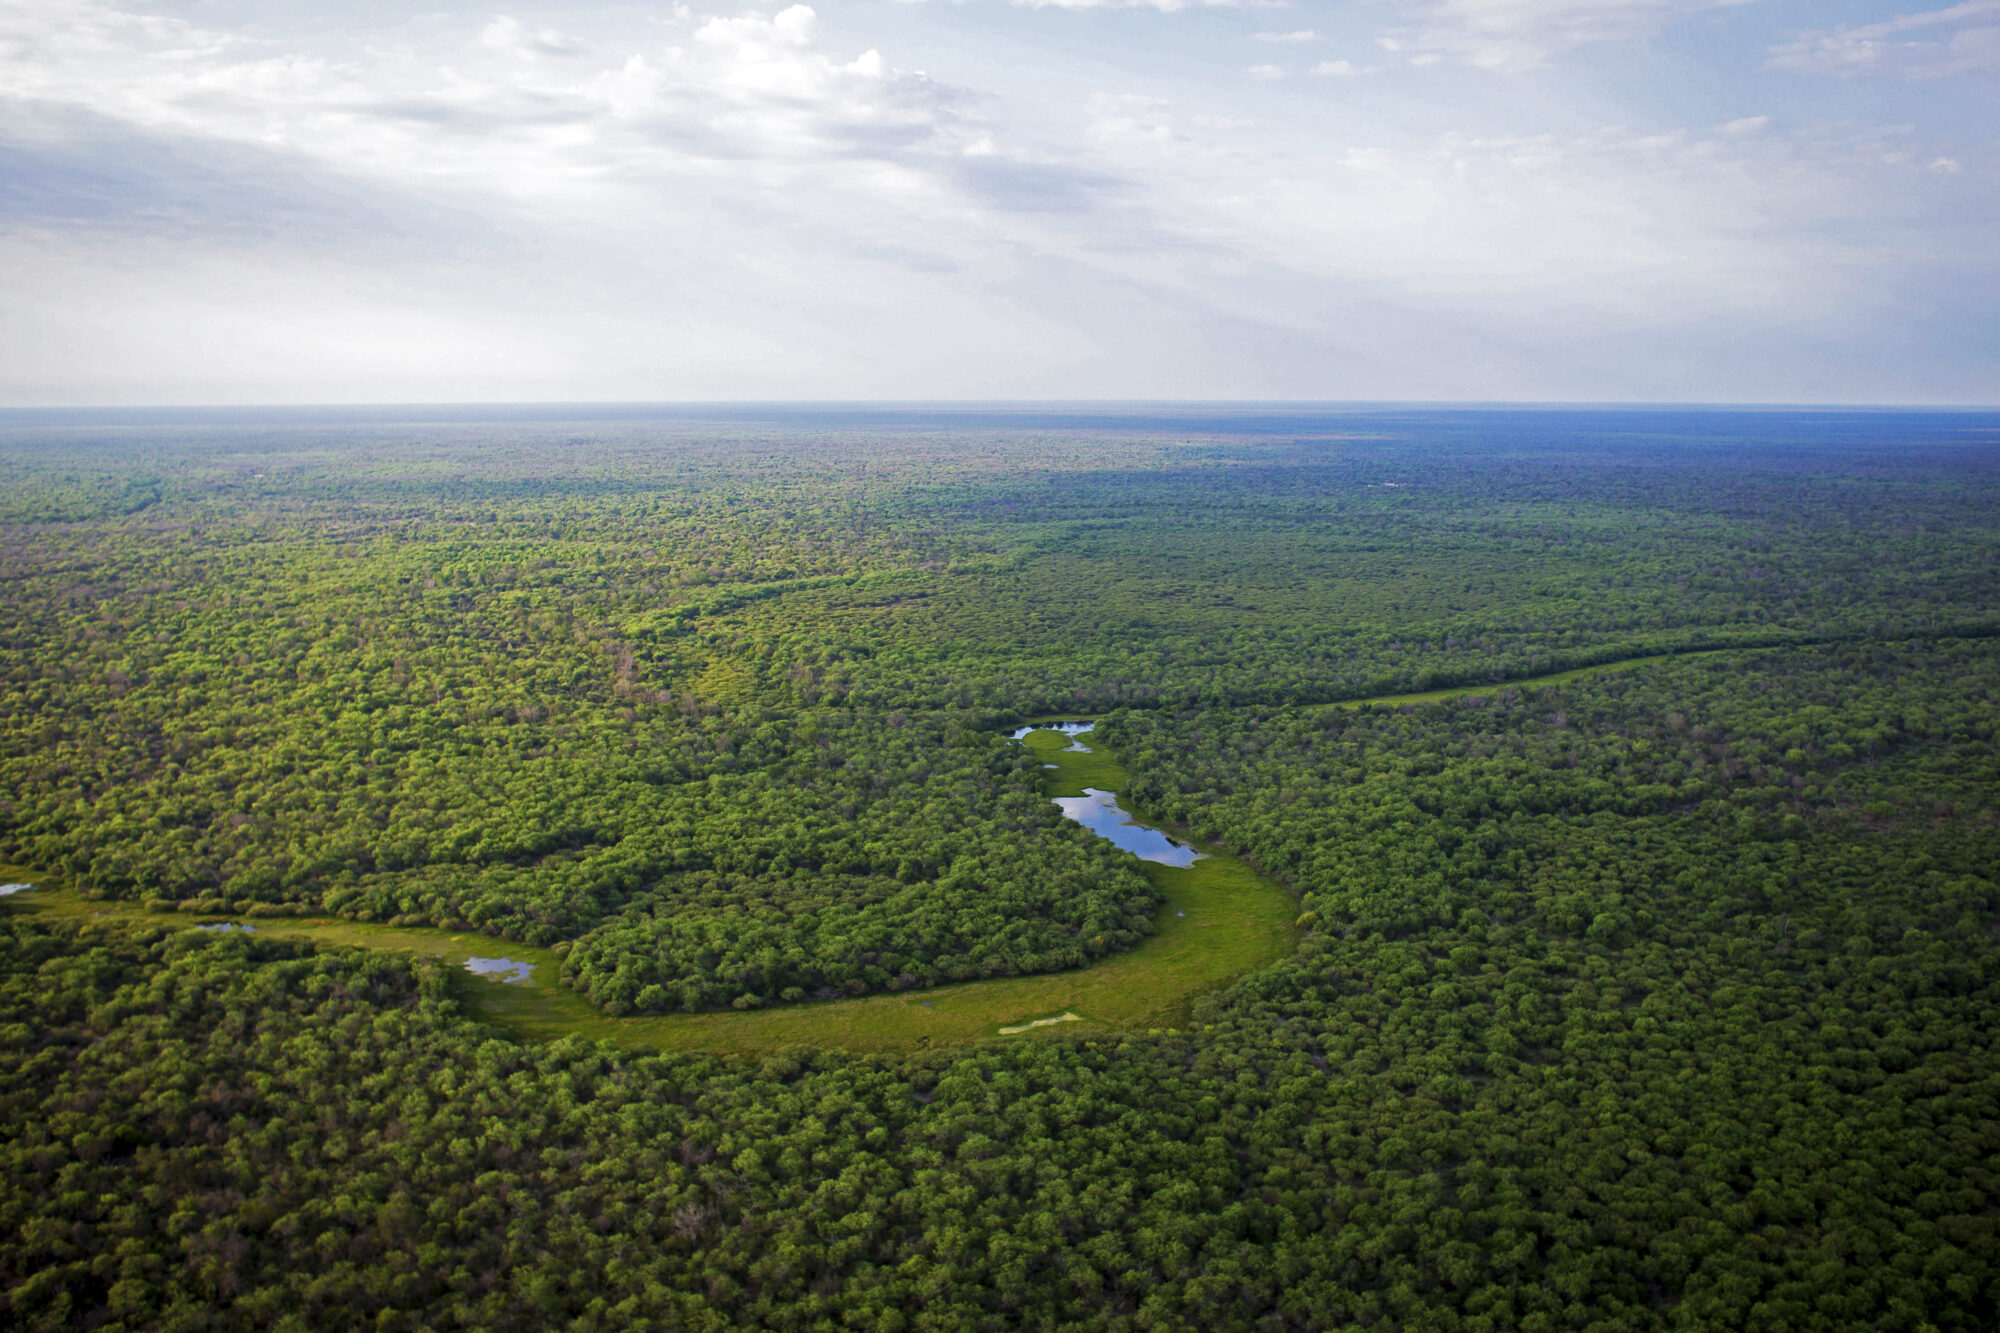 <p>Desde 1985, cerca de 14 milhões de hectares do Gran Chaco foram desmatados. Apenas uma pequena parte do bioma está protegida atualmente (Imagem: Emiliano Lasalvia)</p>